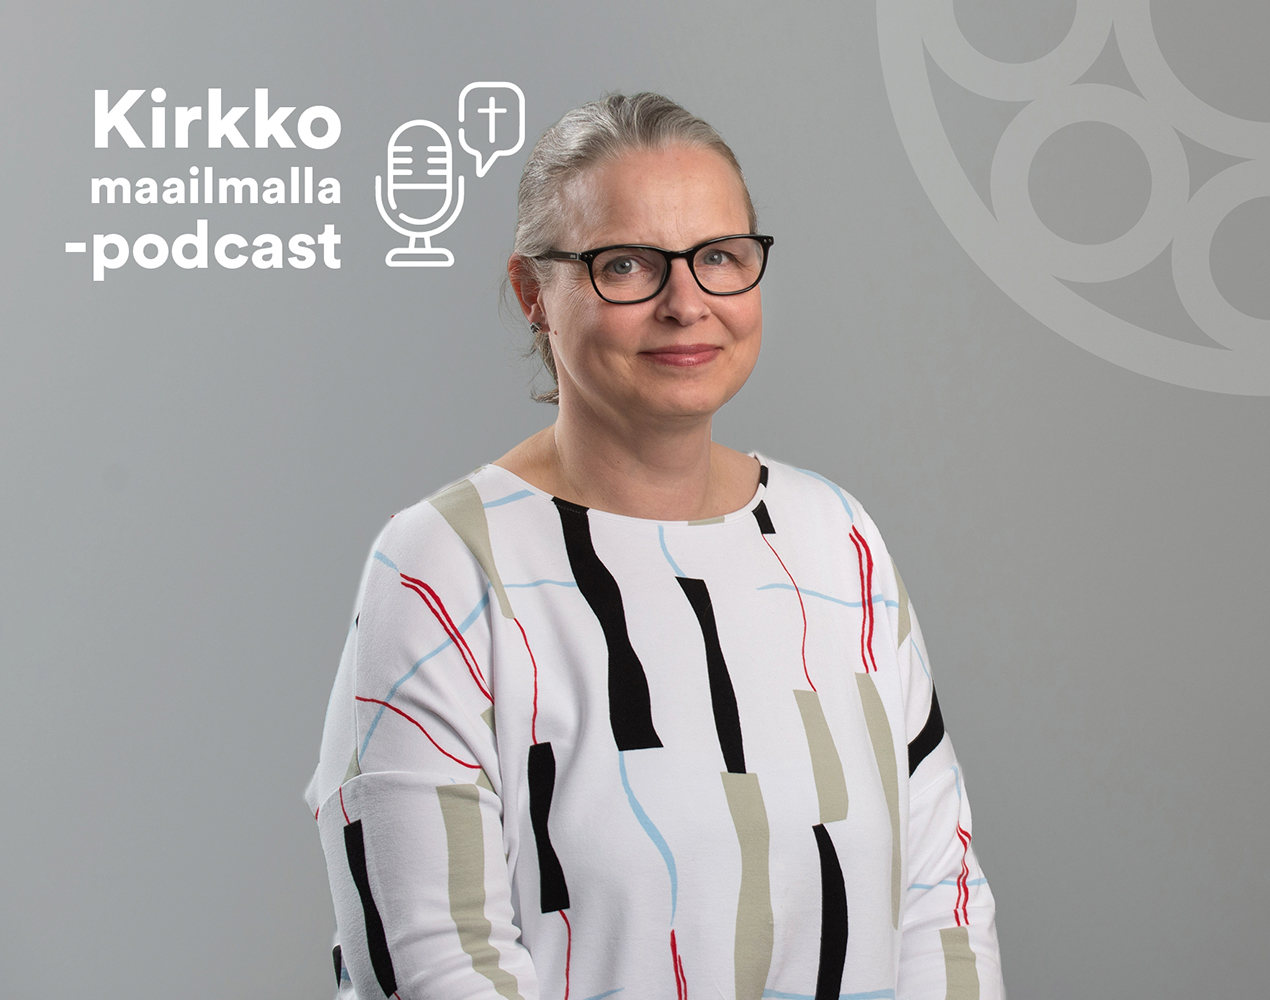 Kirkko maailmalla -podcastissa haastateltavana Eija Alajarva.